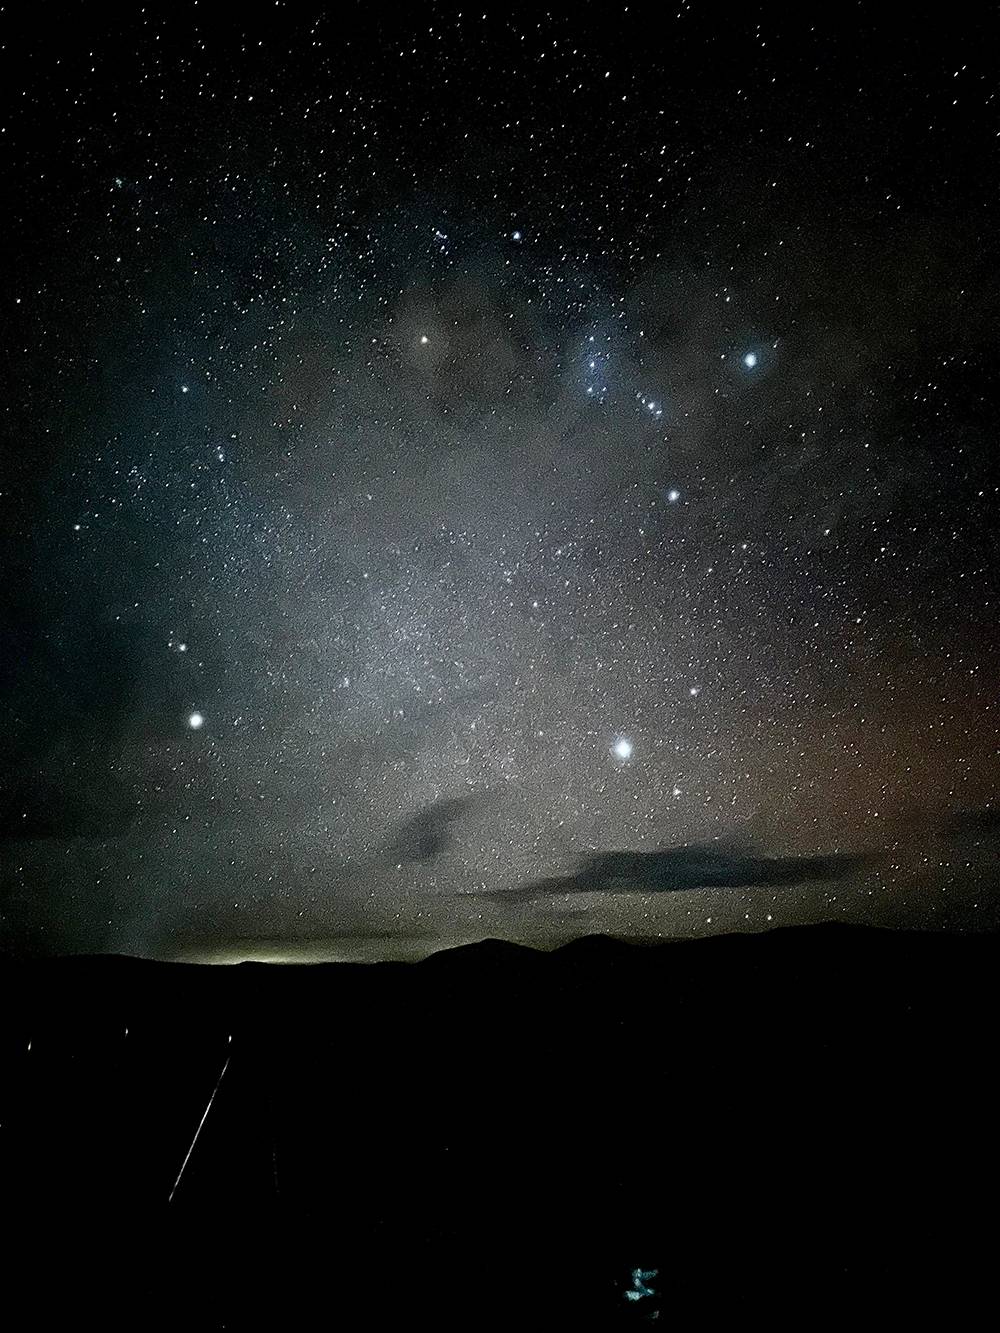 Из-за отсутствия искусственного освещения ночью открывается потрясающее звездное небо. Красивые фотографии можно сделать даже на обычный телефон, используя выдержку и что-то вроде штатива